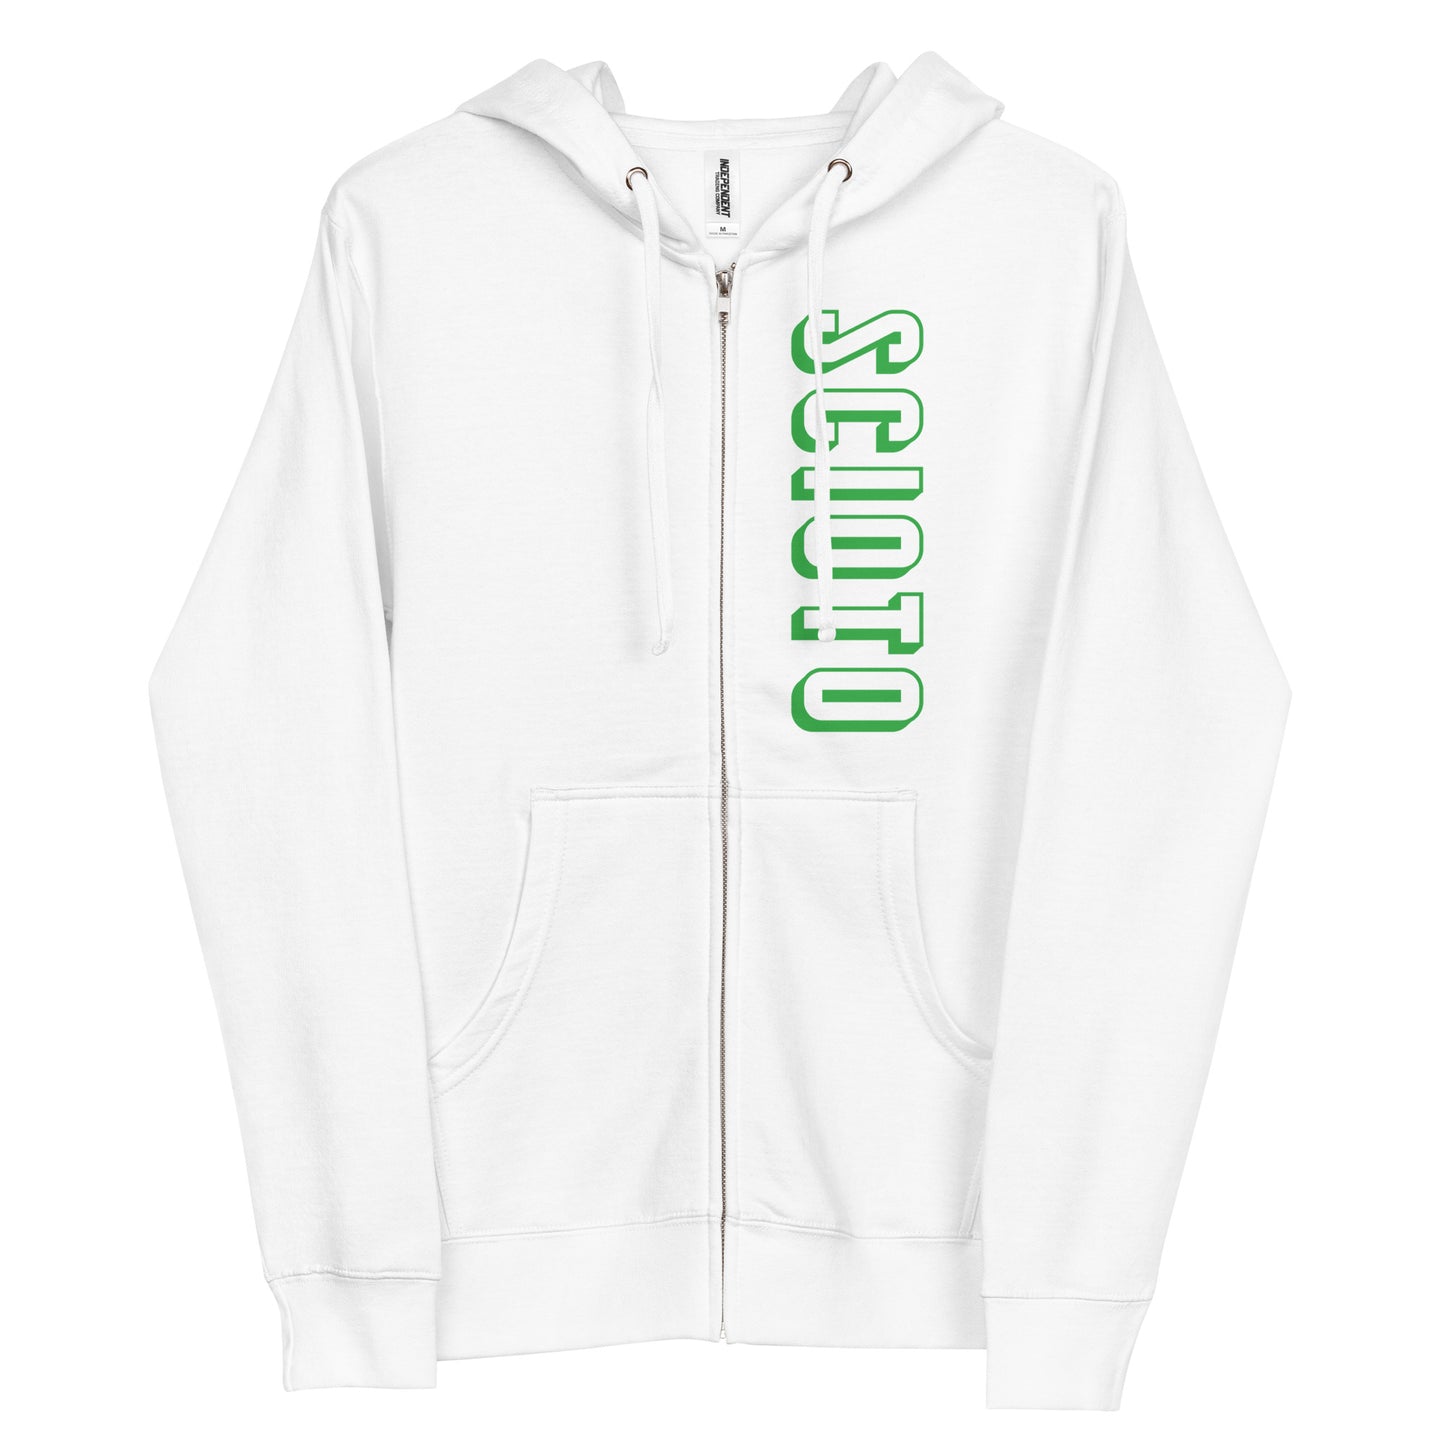 SCIOTO (vertical)-Unisex fleece zip up hoodie